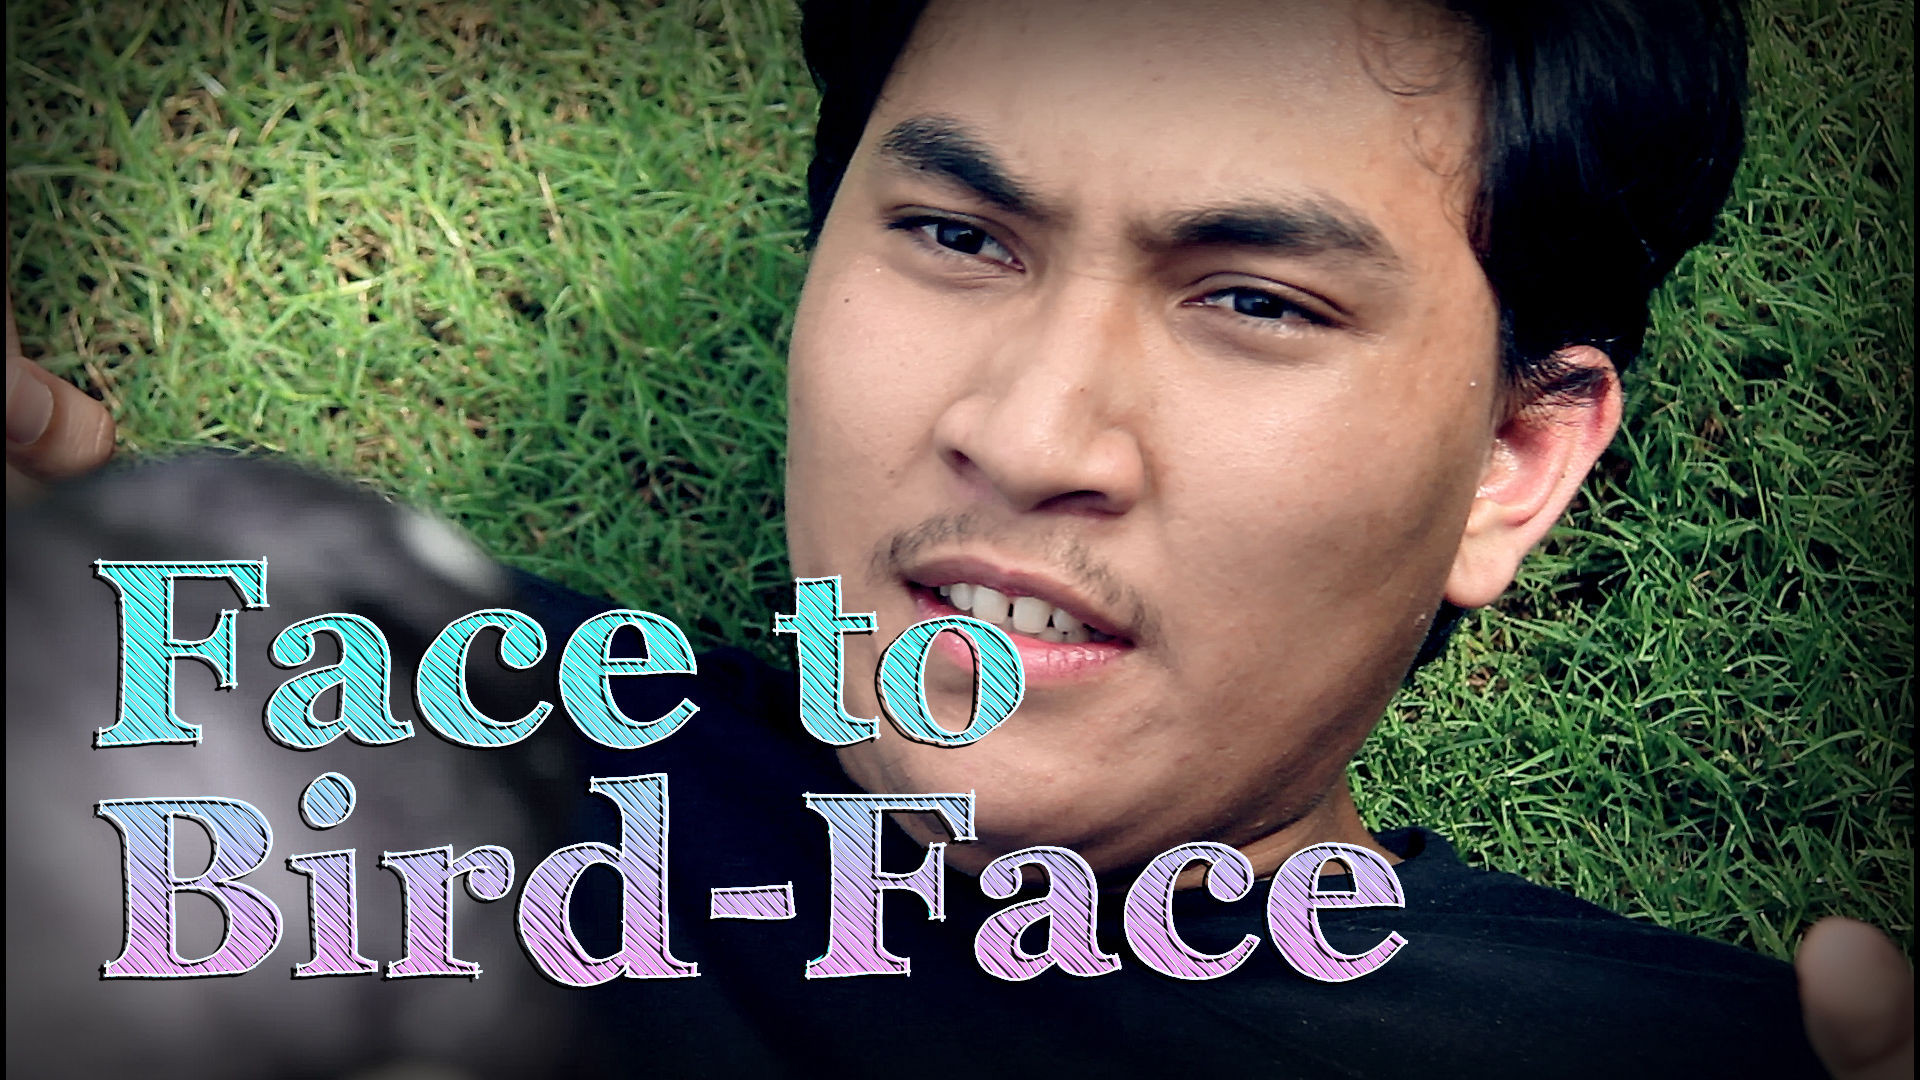 Face to Bird-Face